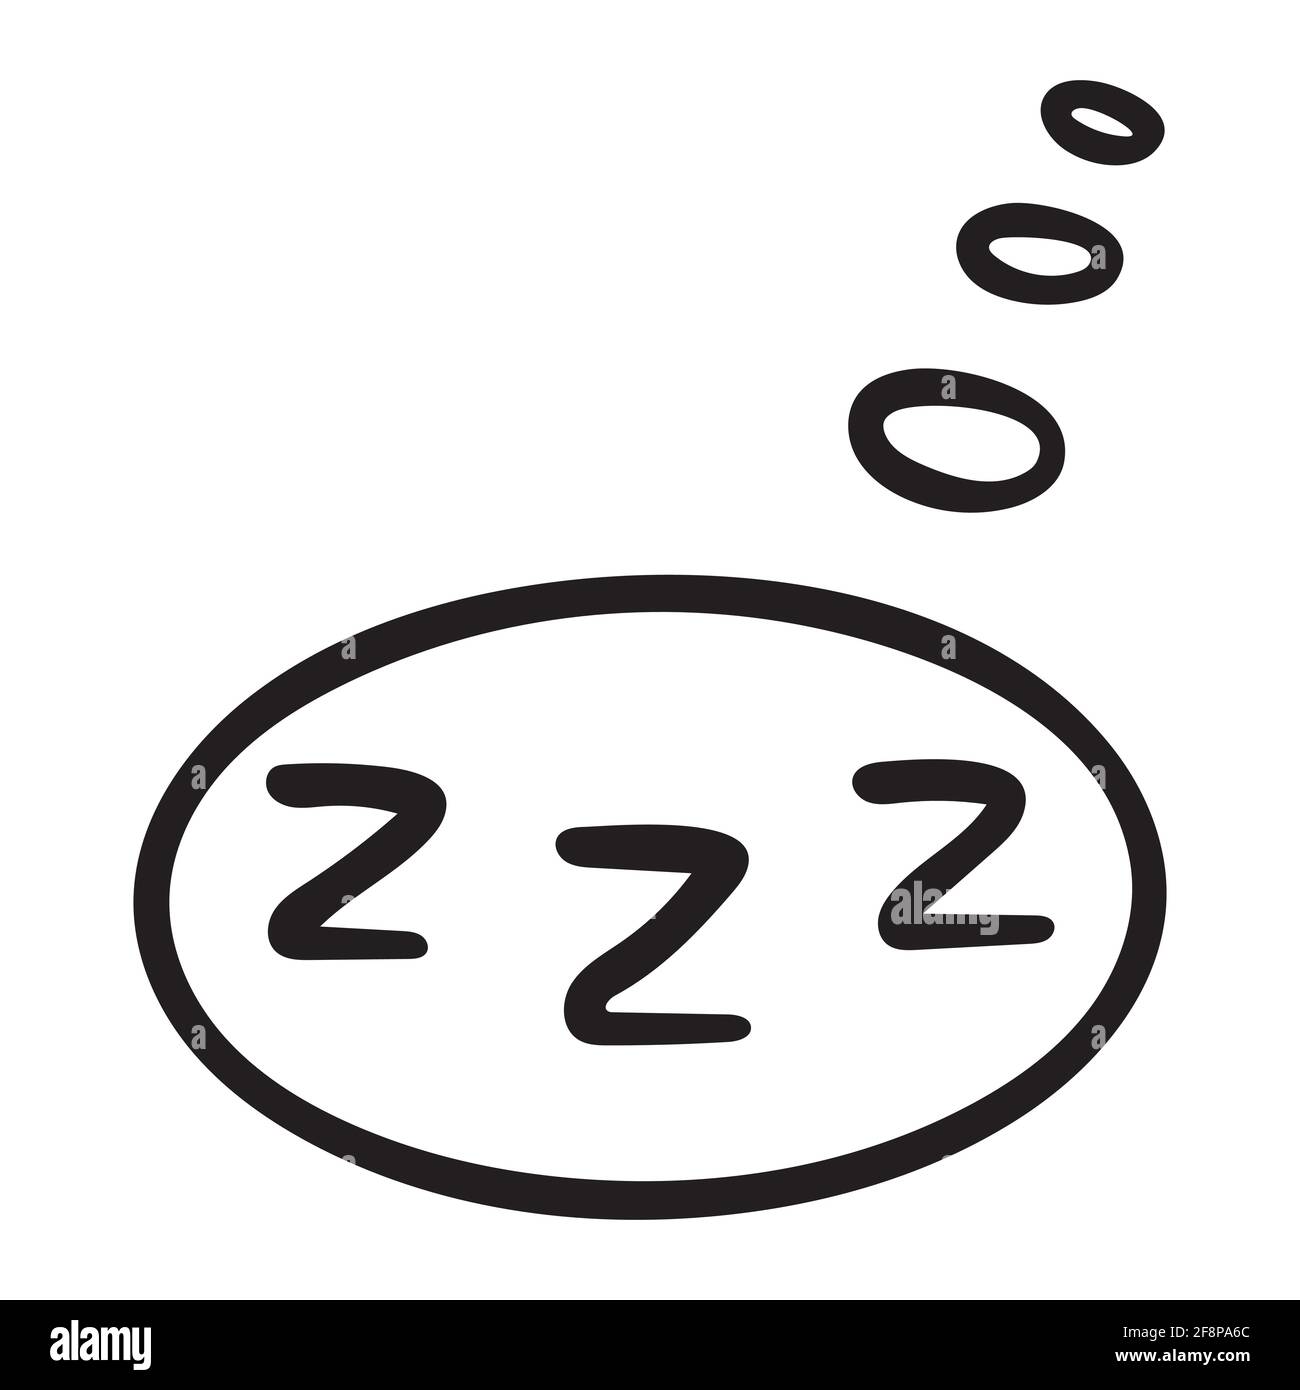 Energiesparsymbole zzz. Handgezeichnetes Zzz in einer Sprechblase. zz schlafende Nacht Zeichen-Symbol Stock Vektor